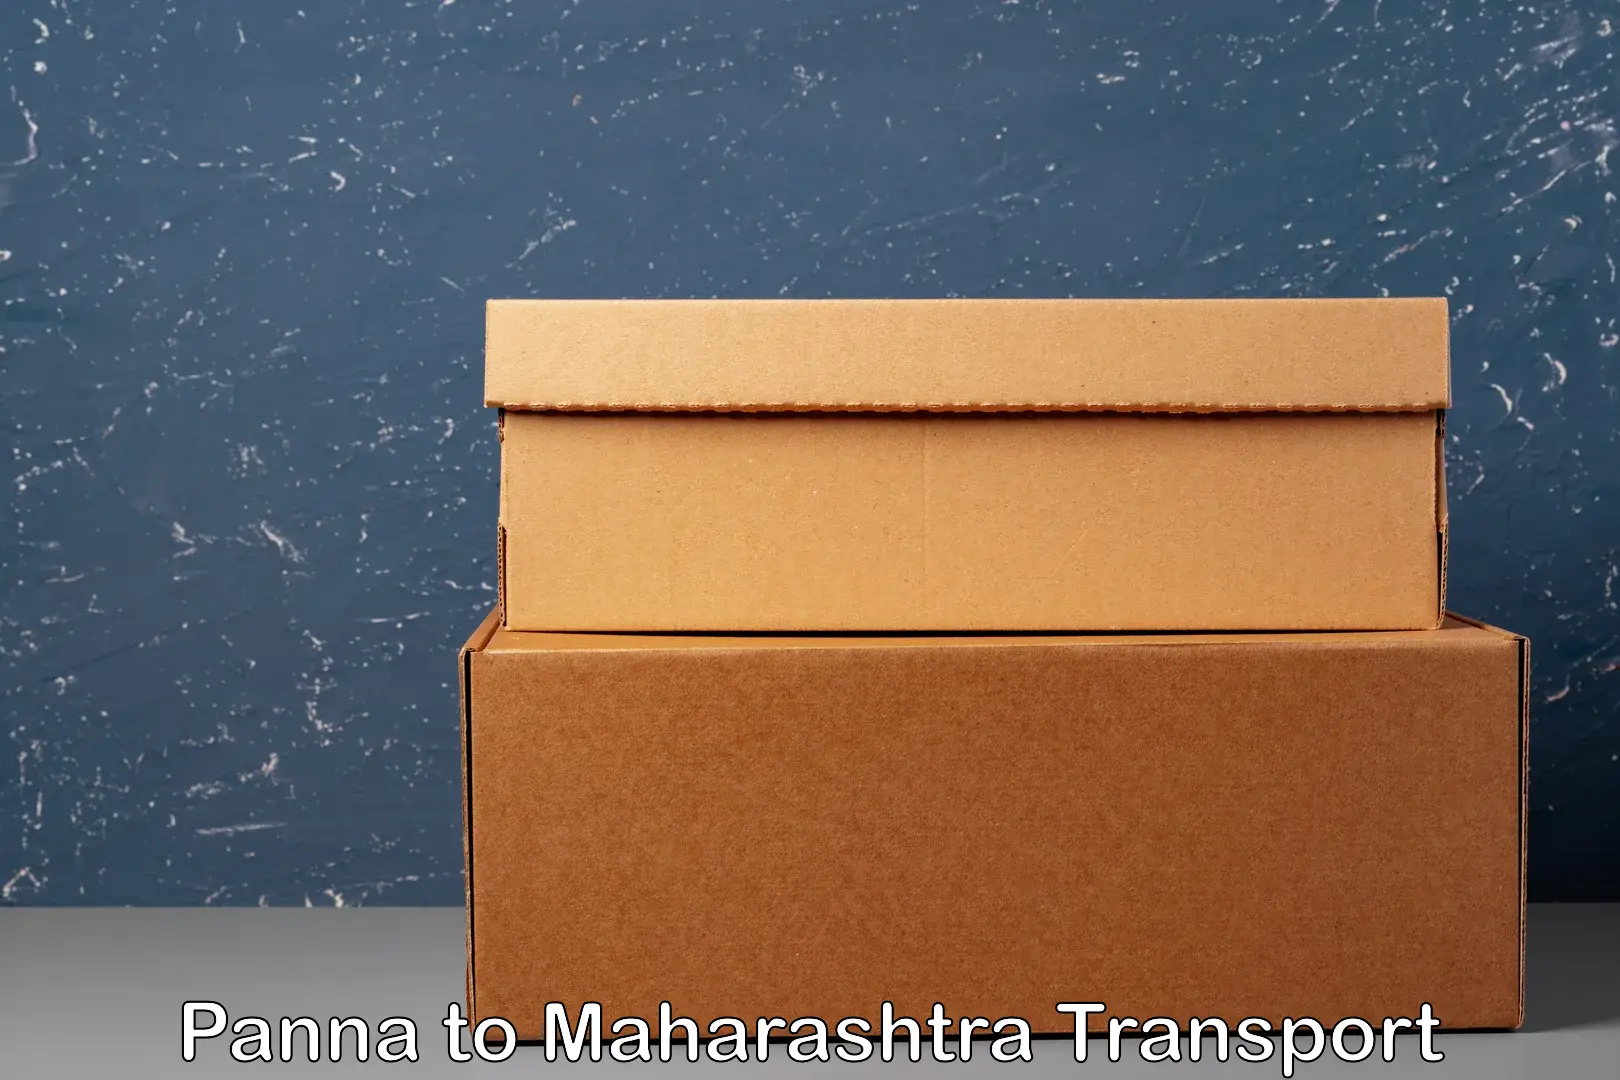 Bike shipping service Panna to Maharashtra